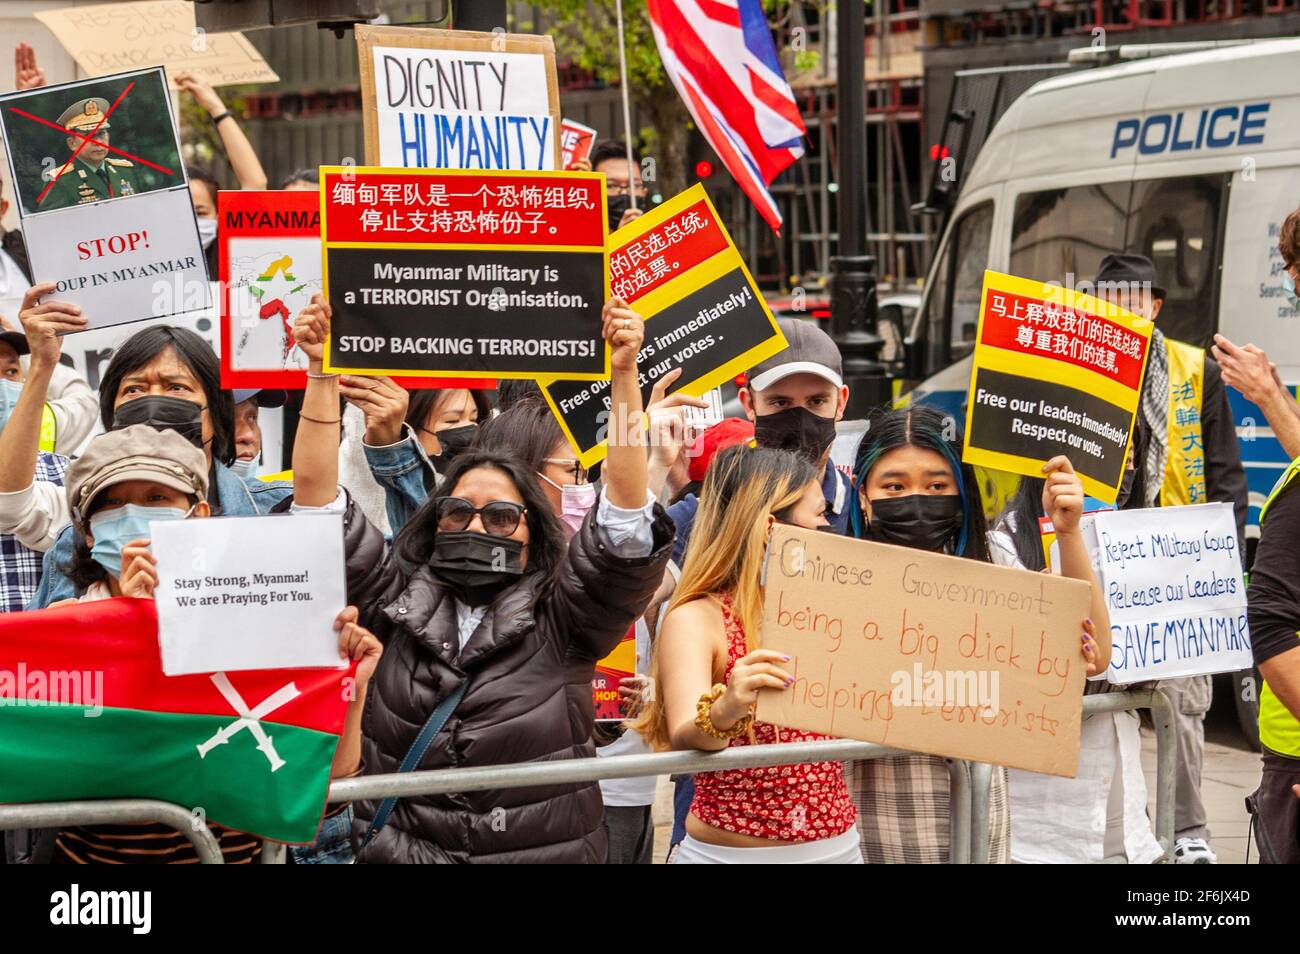 PORTLAND PLACE, LONDRES, ANGLETERRE- 31 mars 2021 : photos de manifestants lors d'une manifestation contre le coup d'État militaire du Myanmar, en face de l'ambassade chinoise Banque D'Images